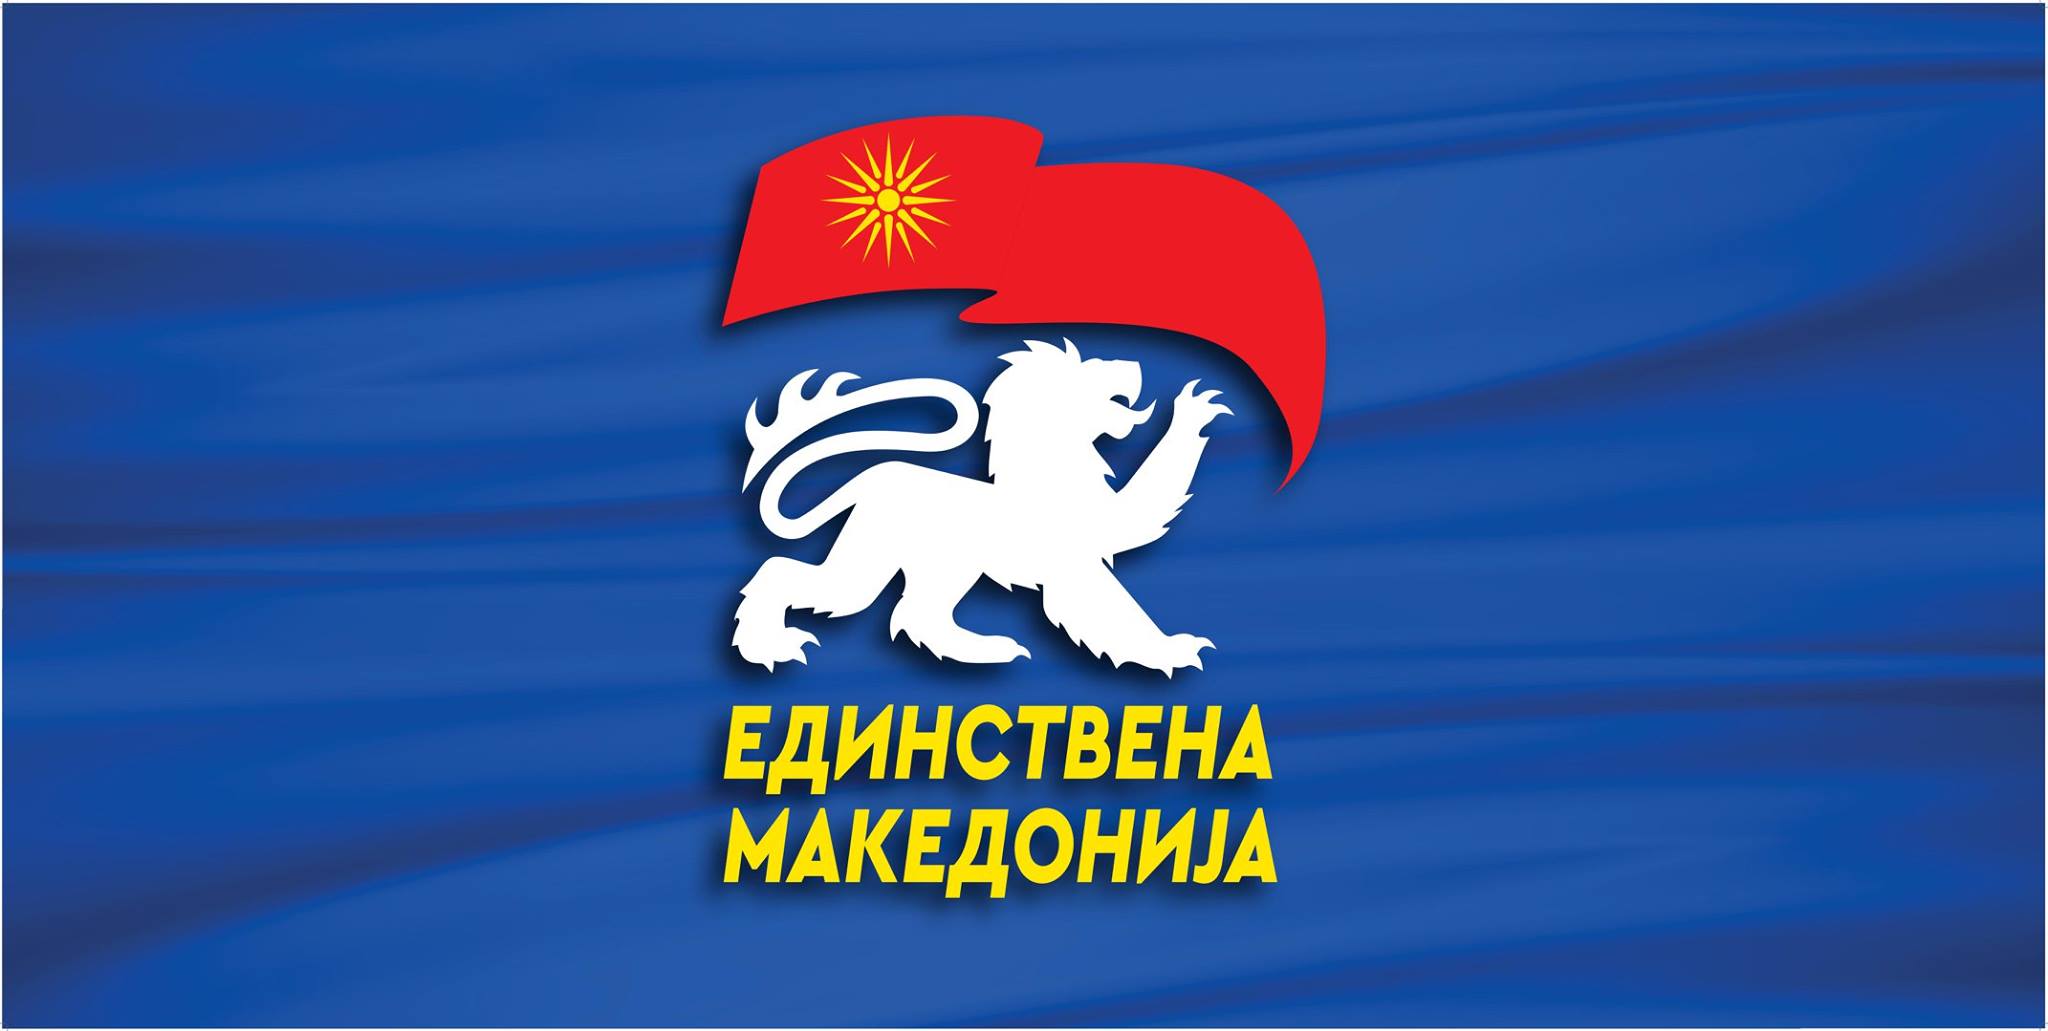 Единствена Македонија до Заев: Барај помош за македонските државјани од руската амбасада во Авганистан која и натаму работи откако американските дипломати започнаа бежанија